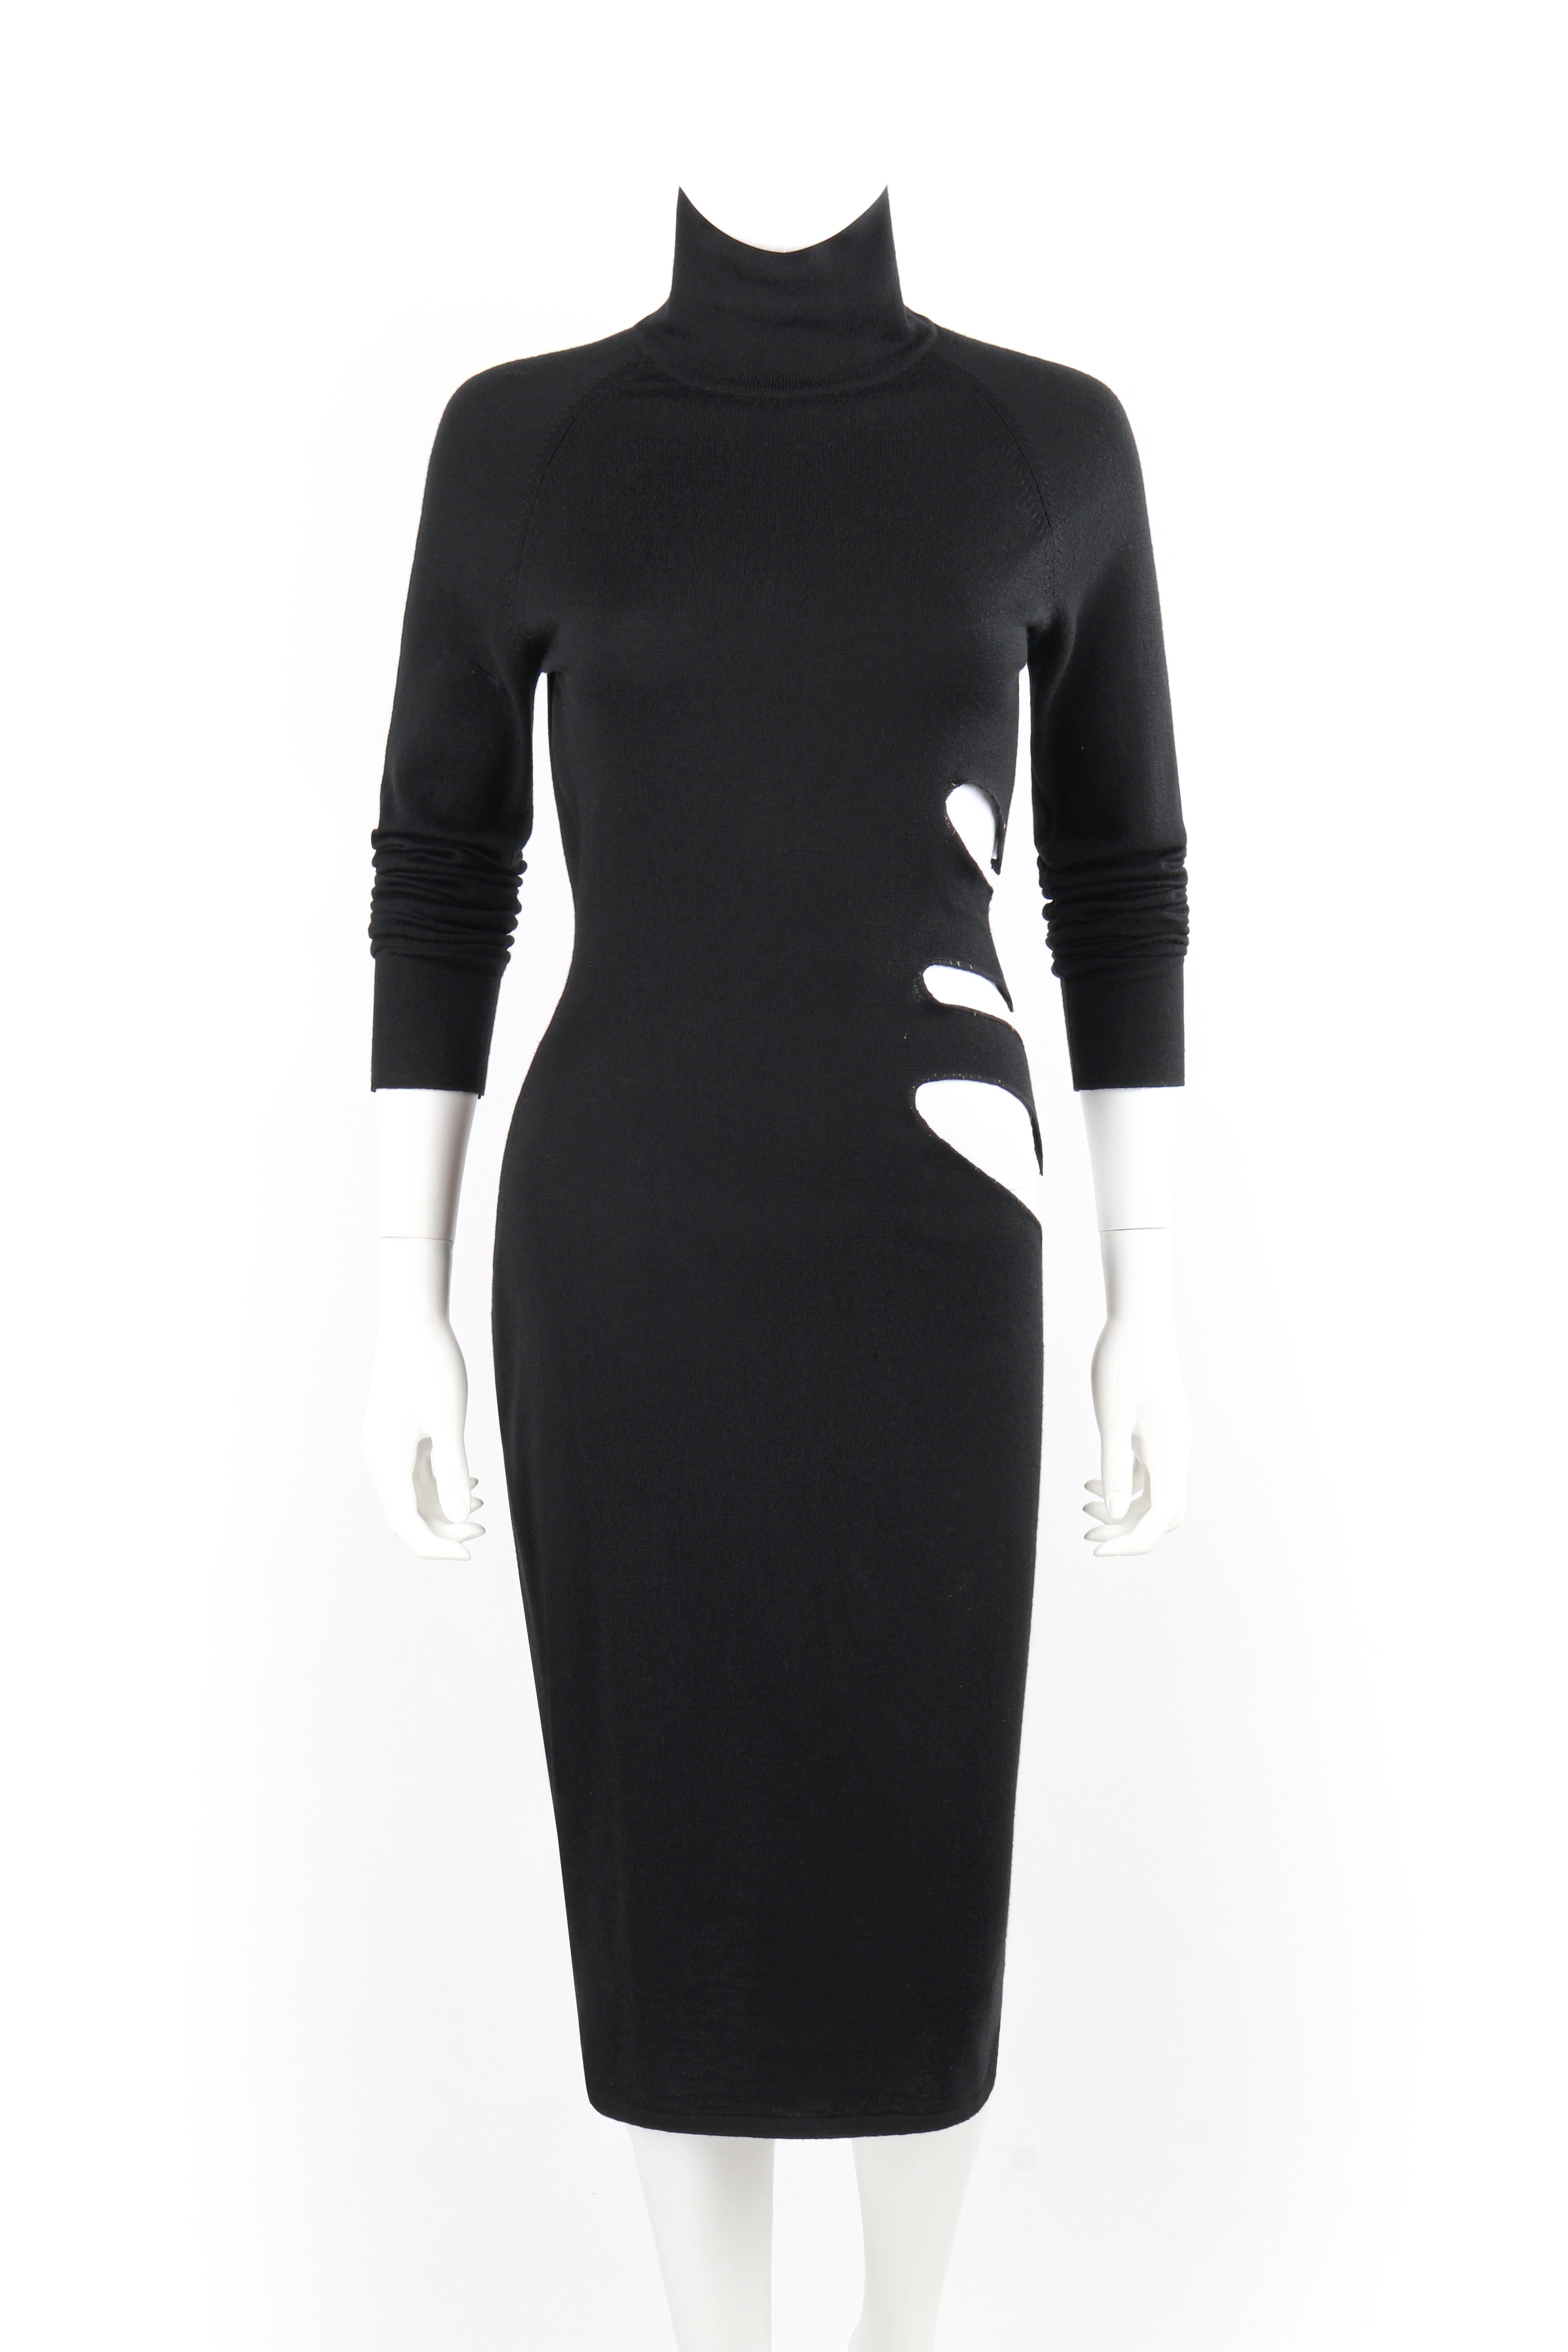 Women's ALEXANDER McQUEEN S/S 1997 “La Poupée” Black Wool Illusion Cutout Cocktail Dress For Sale